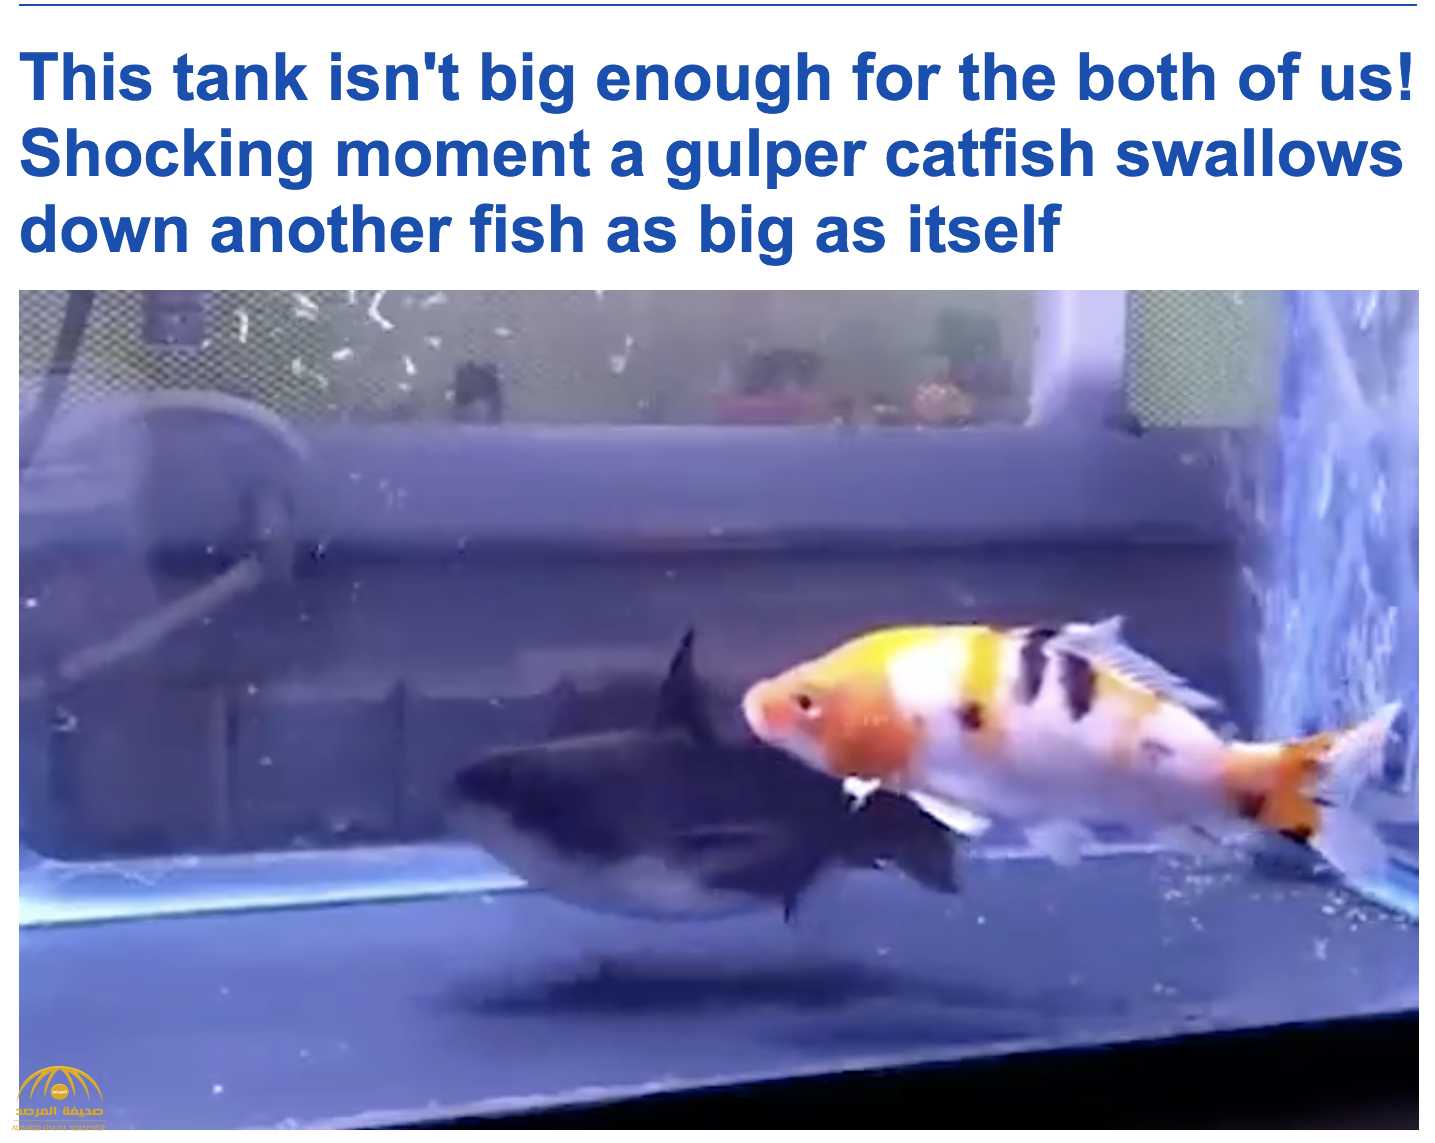 فيديو : شاهد سمكة القط تبتلع أخرى في نفس حجمها ببراعة فائقة في إندونيسيا!